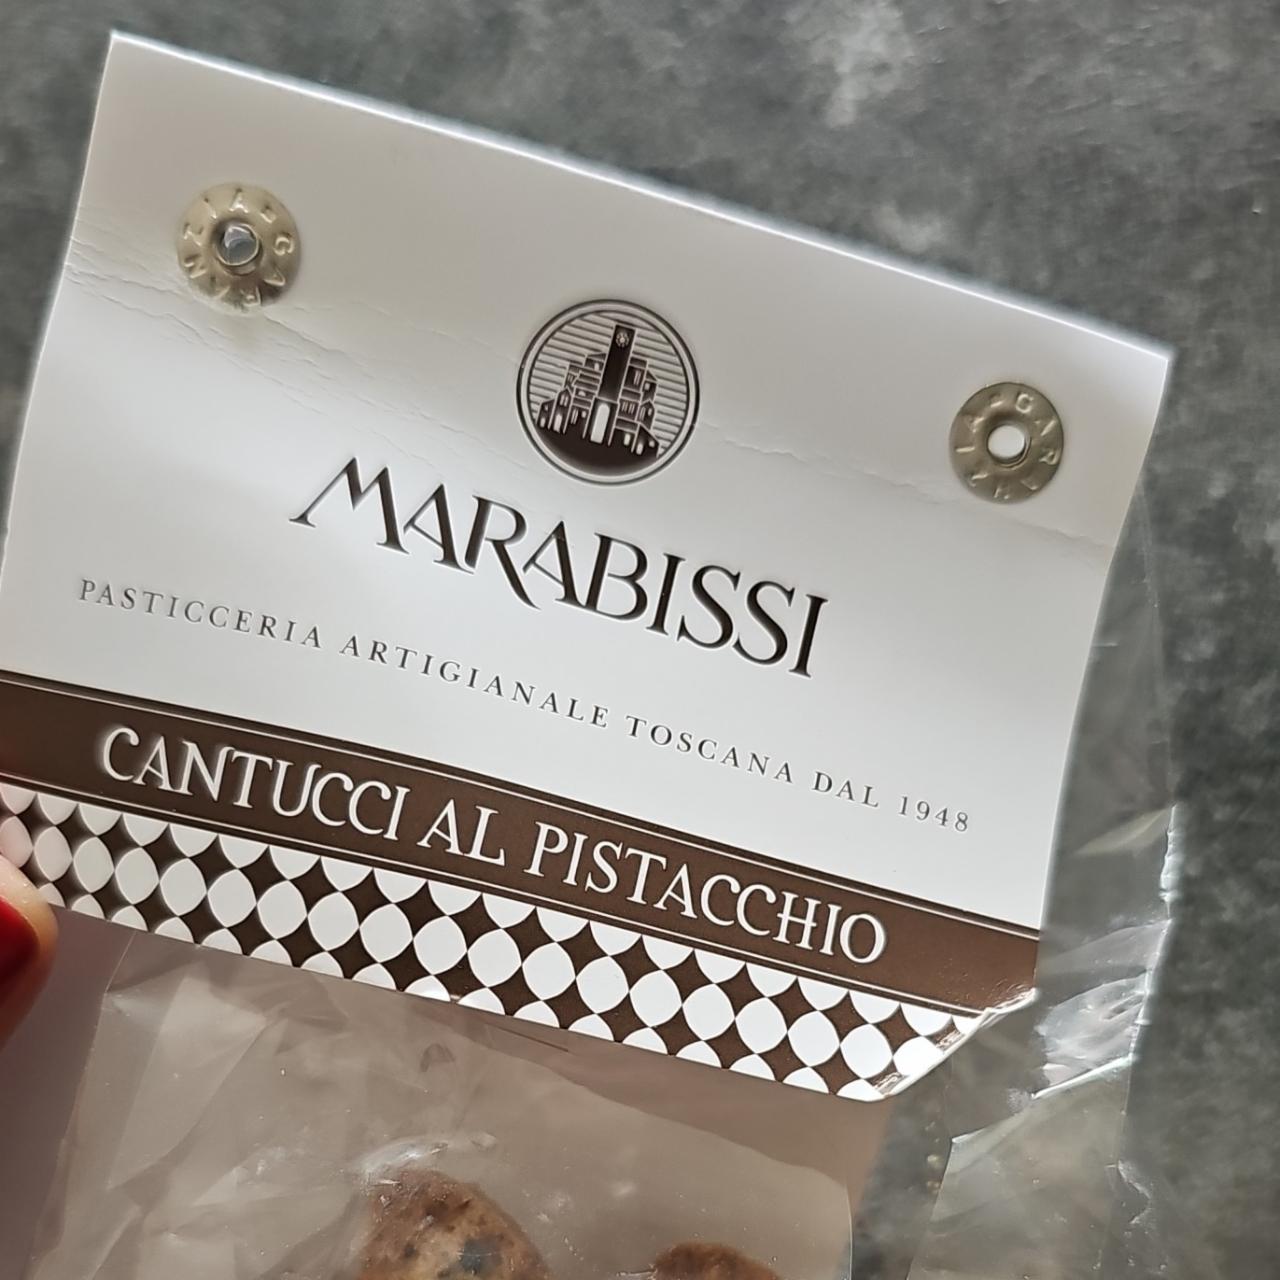 Fotografie - marabissi cantucci al pistacchio